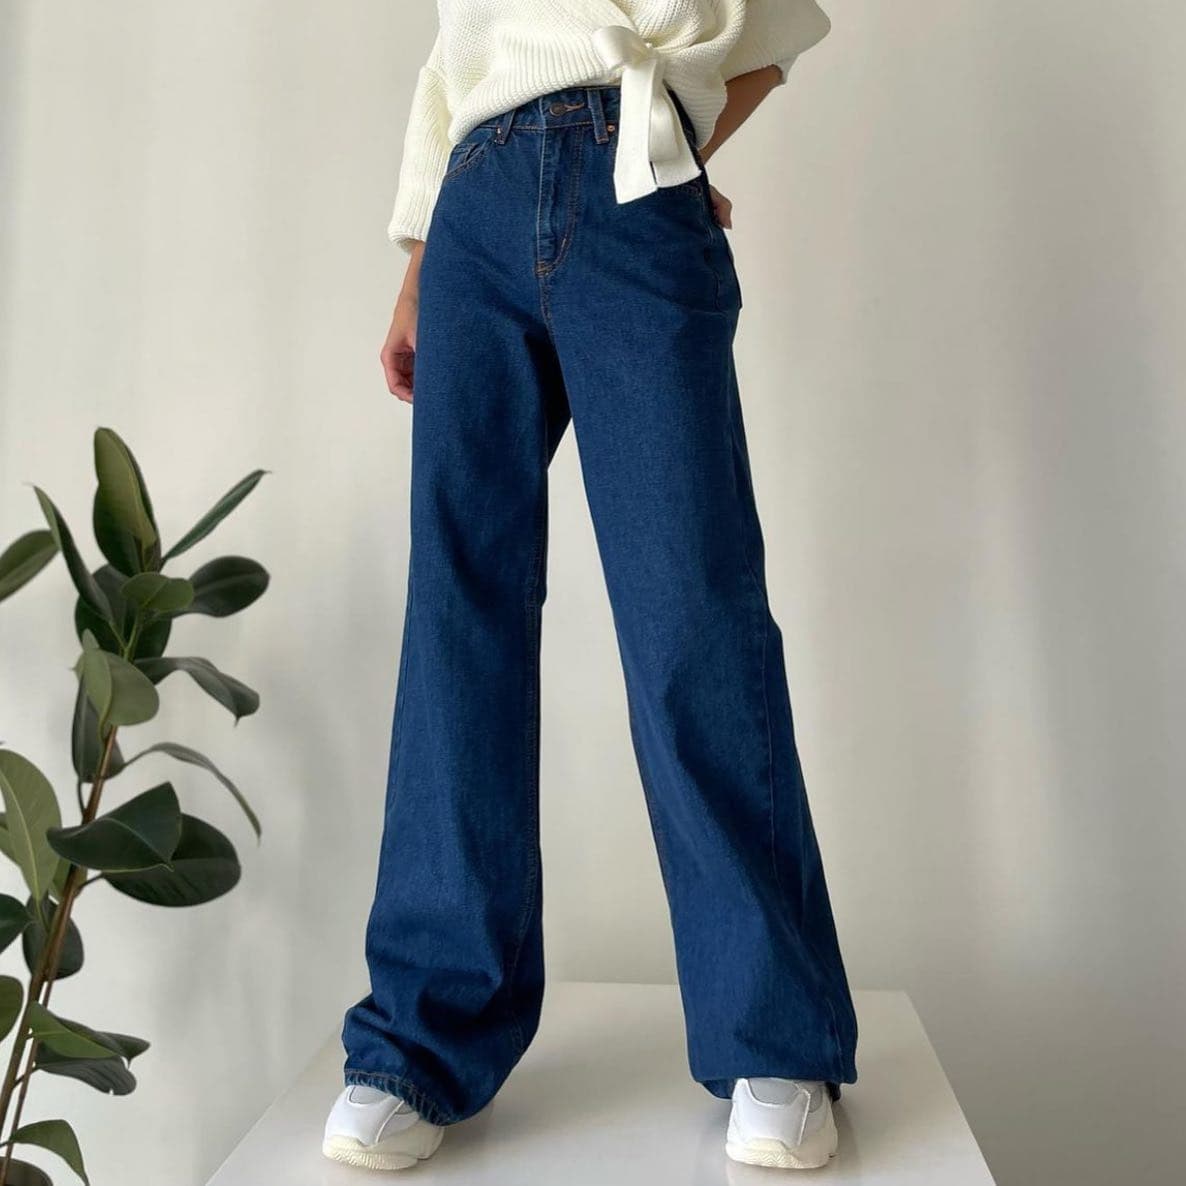 Модные женские джинсы фото №22